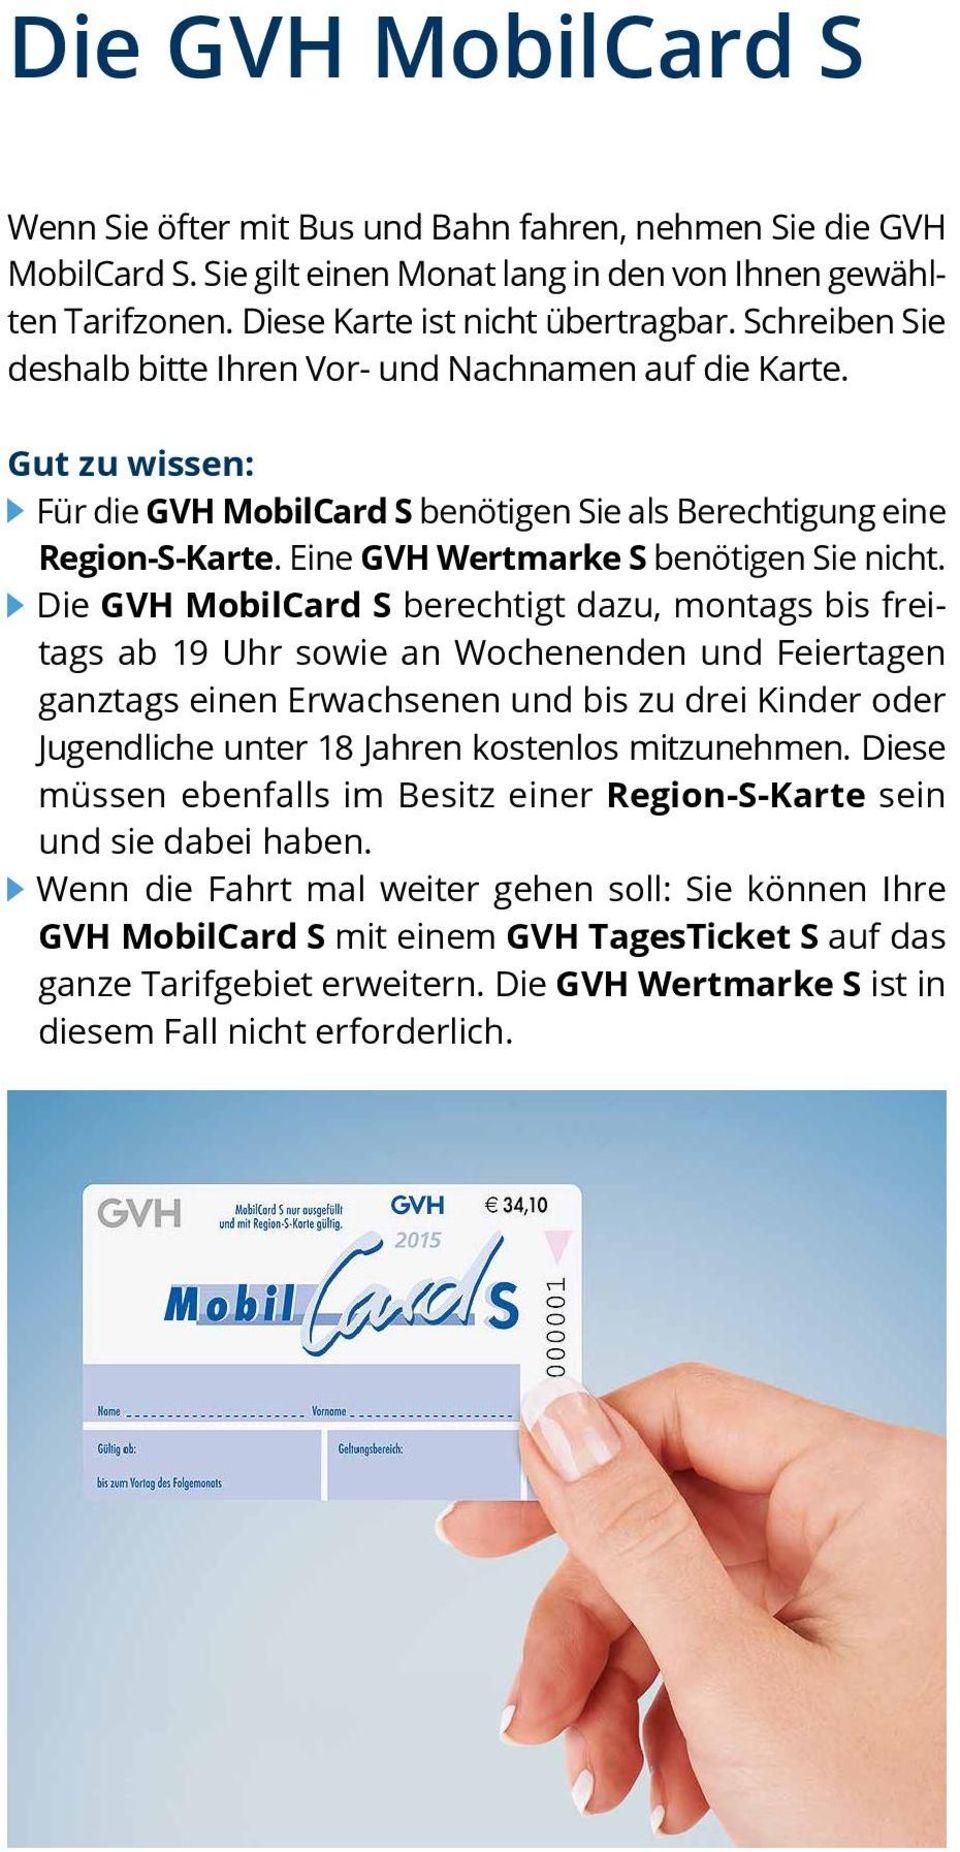 Die GVH MobilCard S berechtigt dazu, montags bis freitags ab 19 Uhr sowie an Wochenenden und Feiertagen ganztags einen Erwachsenen und bis zu drei Kinder oder Jugendliche unter 18 Jahren kostenlos